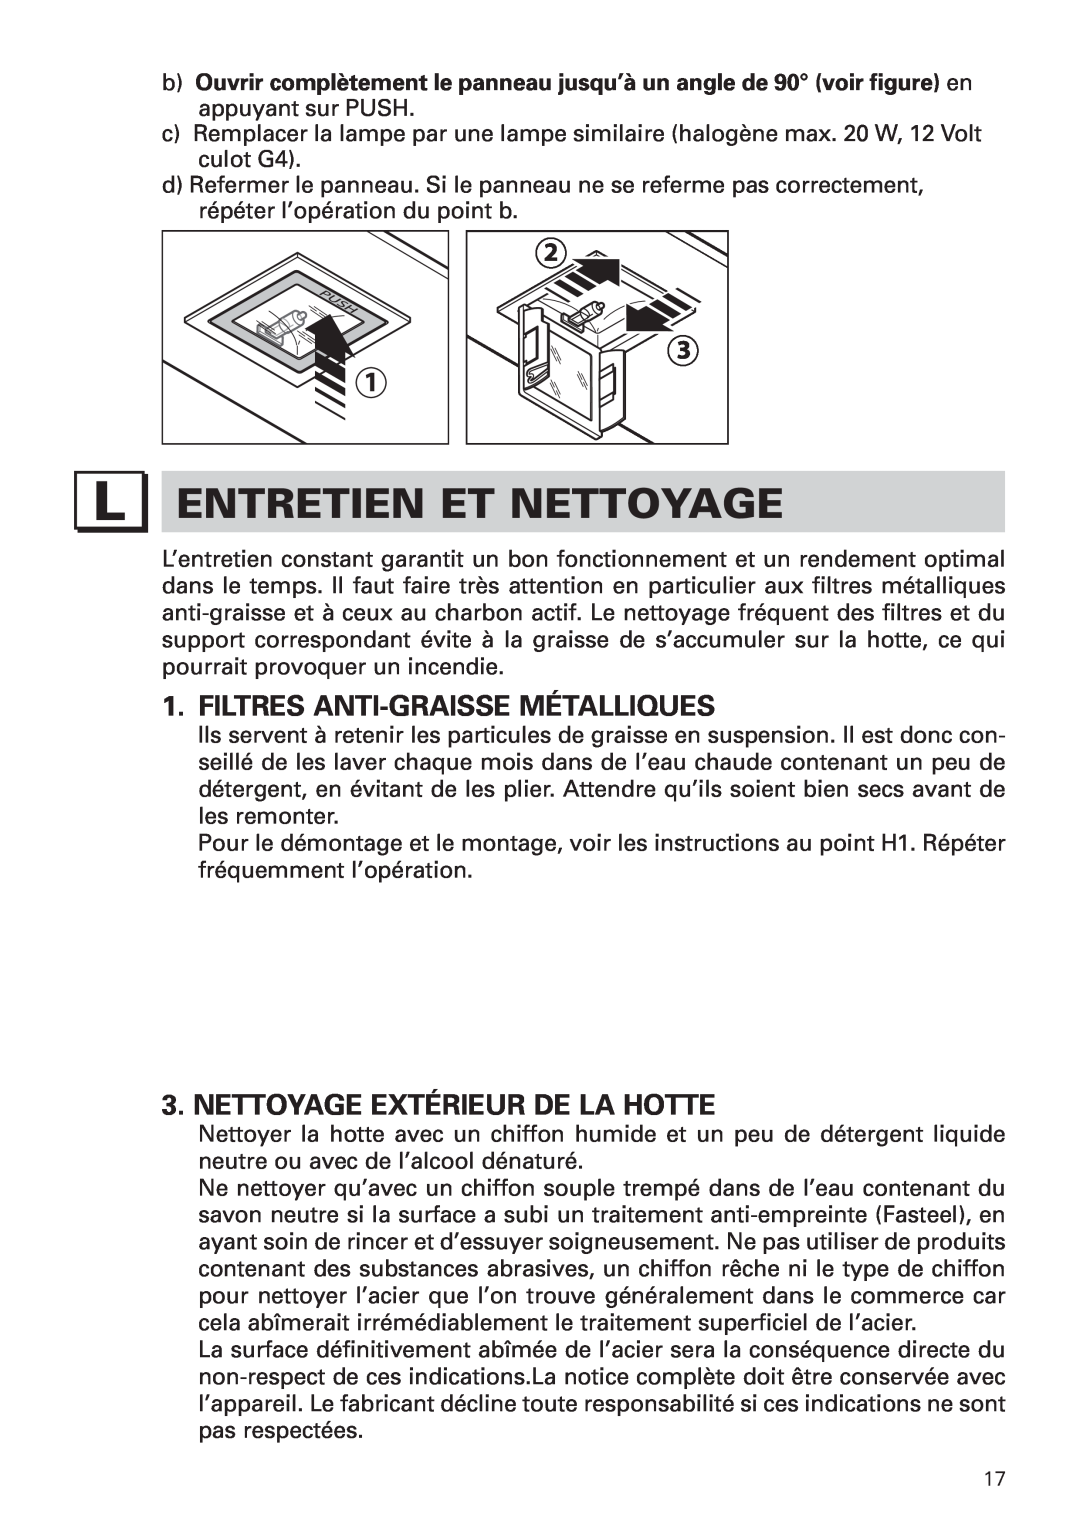 Bertazzoni KIN 36 PER X manual Entretien Et Nettoyage, Filtres Anti-Graissemétalliques, Nettoyage Extérieur De La Hotte 